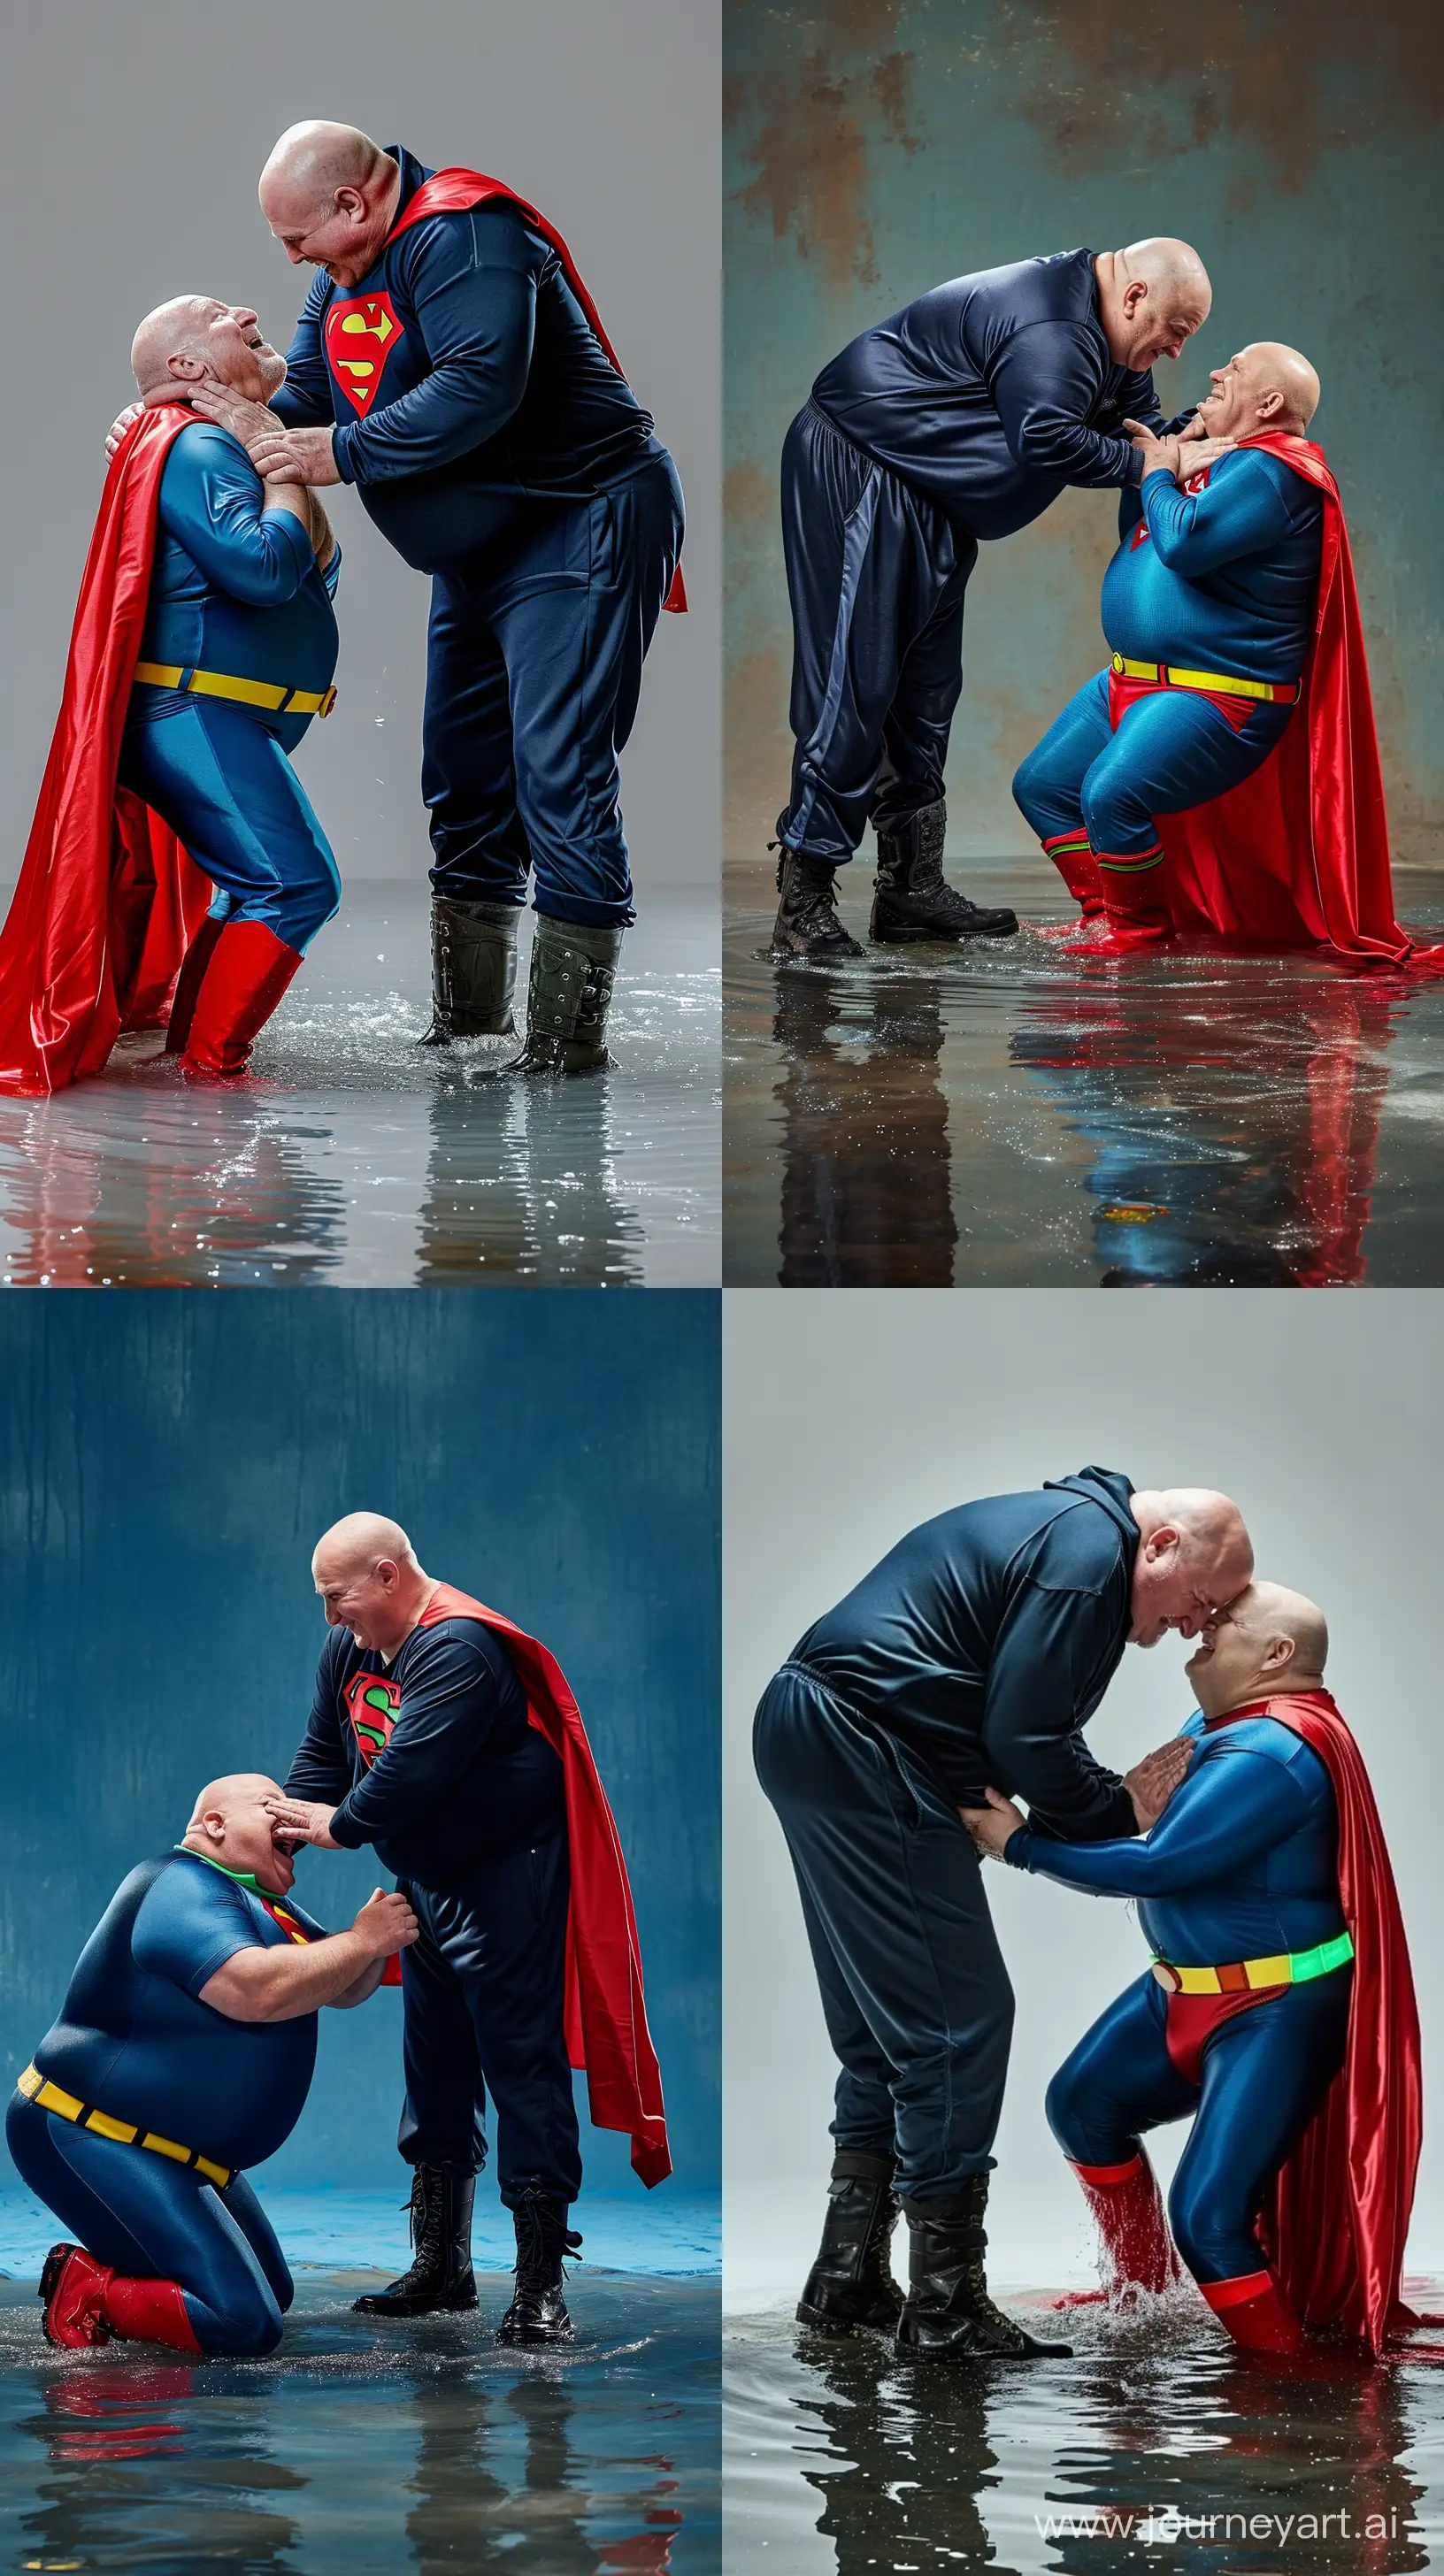 Elderly-Aquatic-Showdown-Superman-Confrontation-in-Silky-Attire